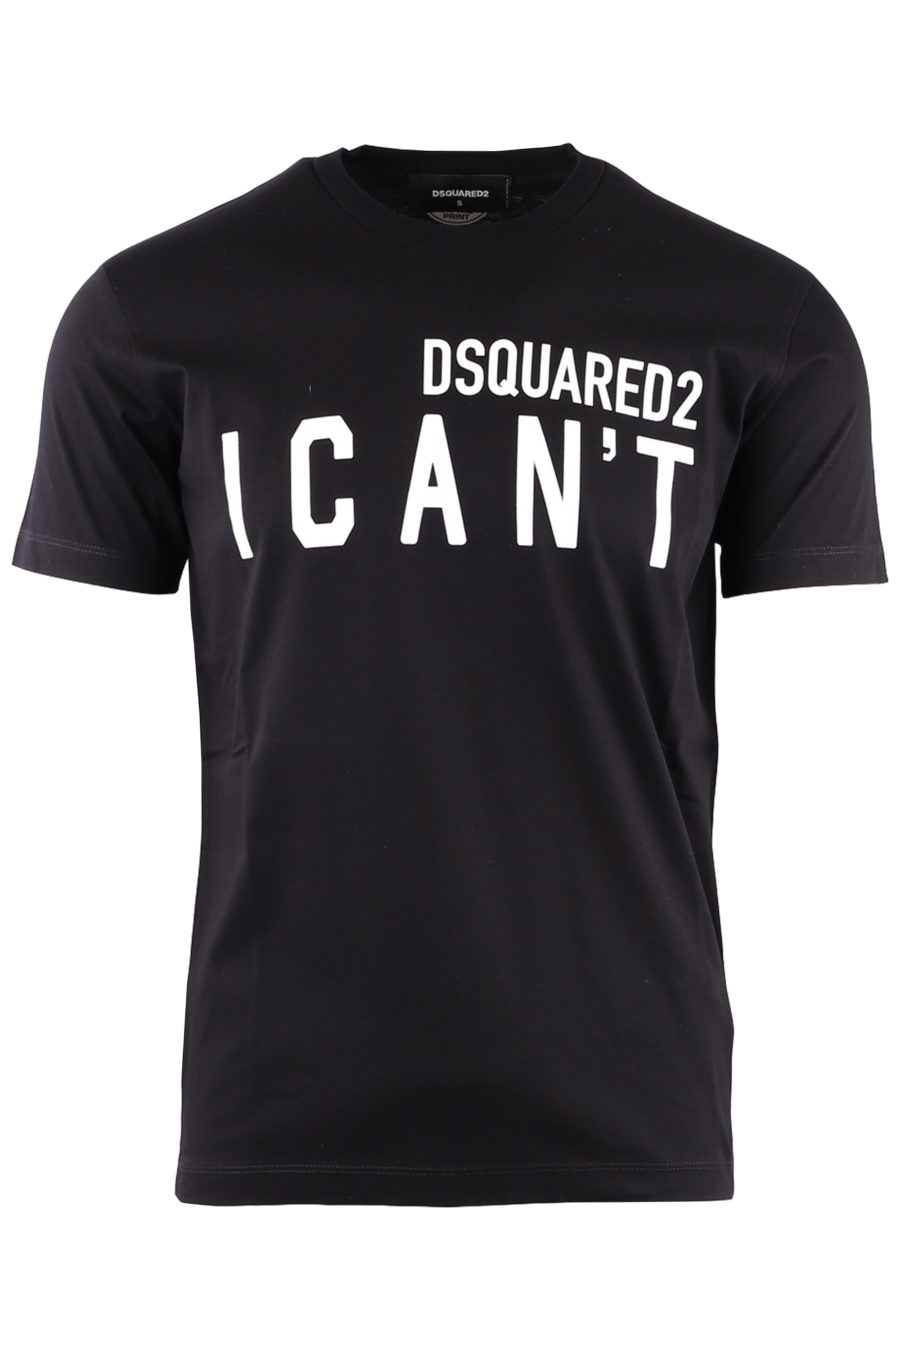 Camiseta negra "I can't" - aa98ba54db1121edf2f274de5dff8f6218c4ad7f